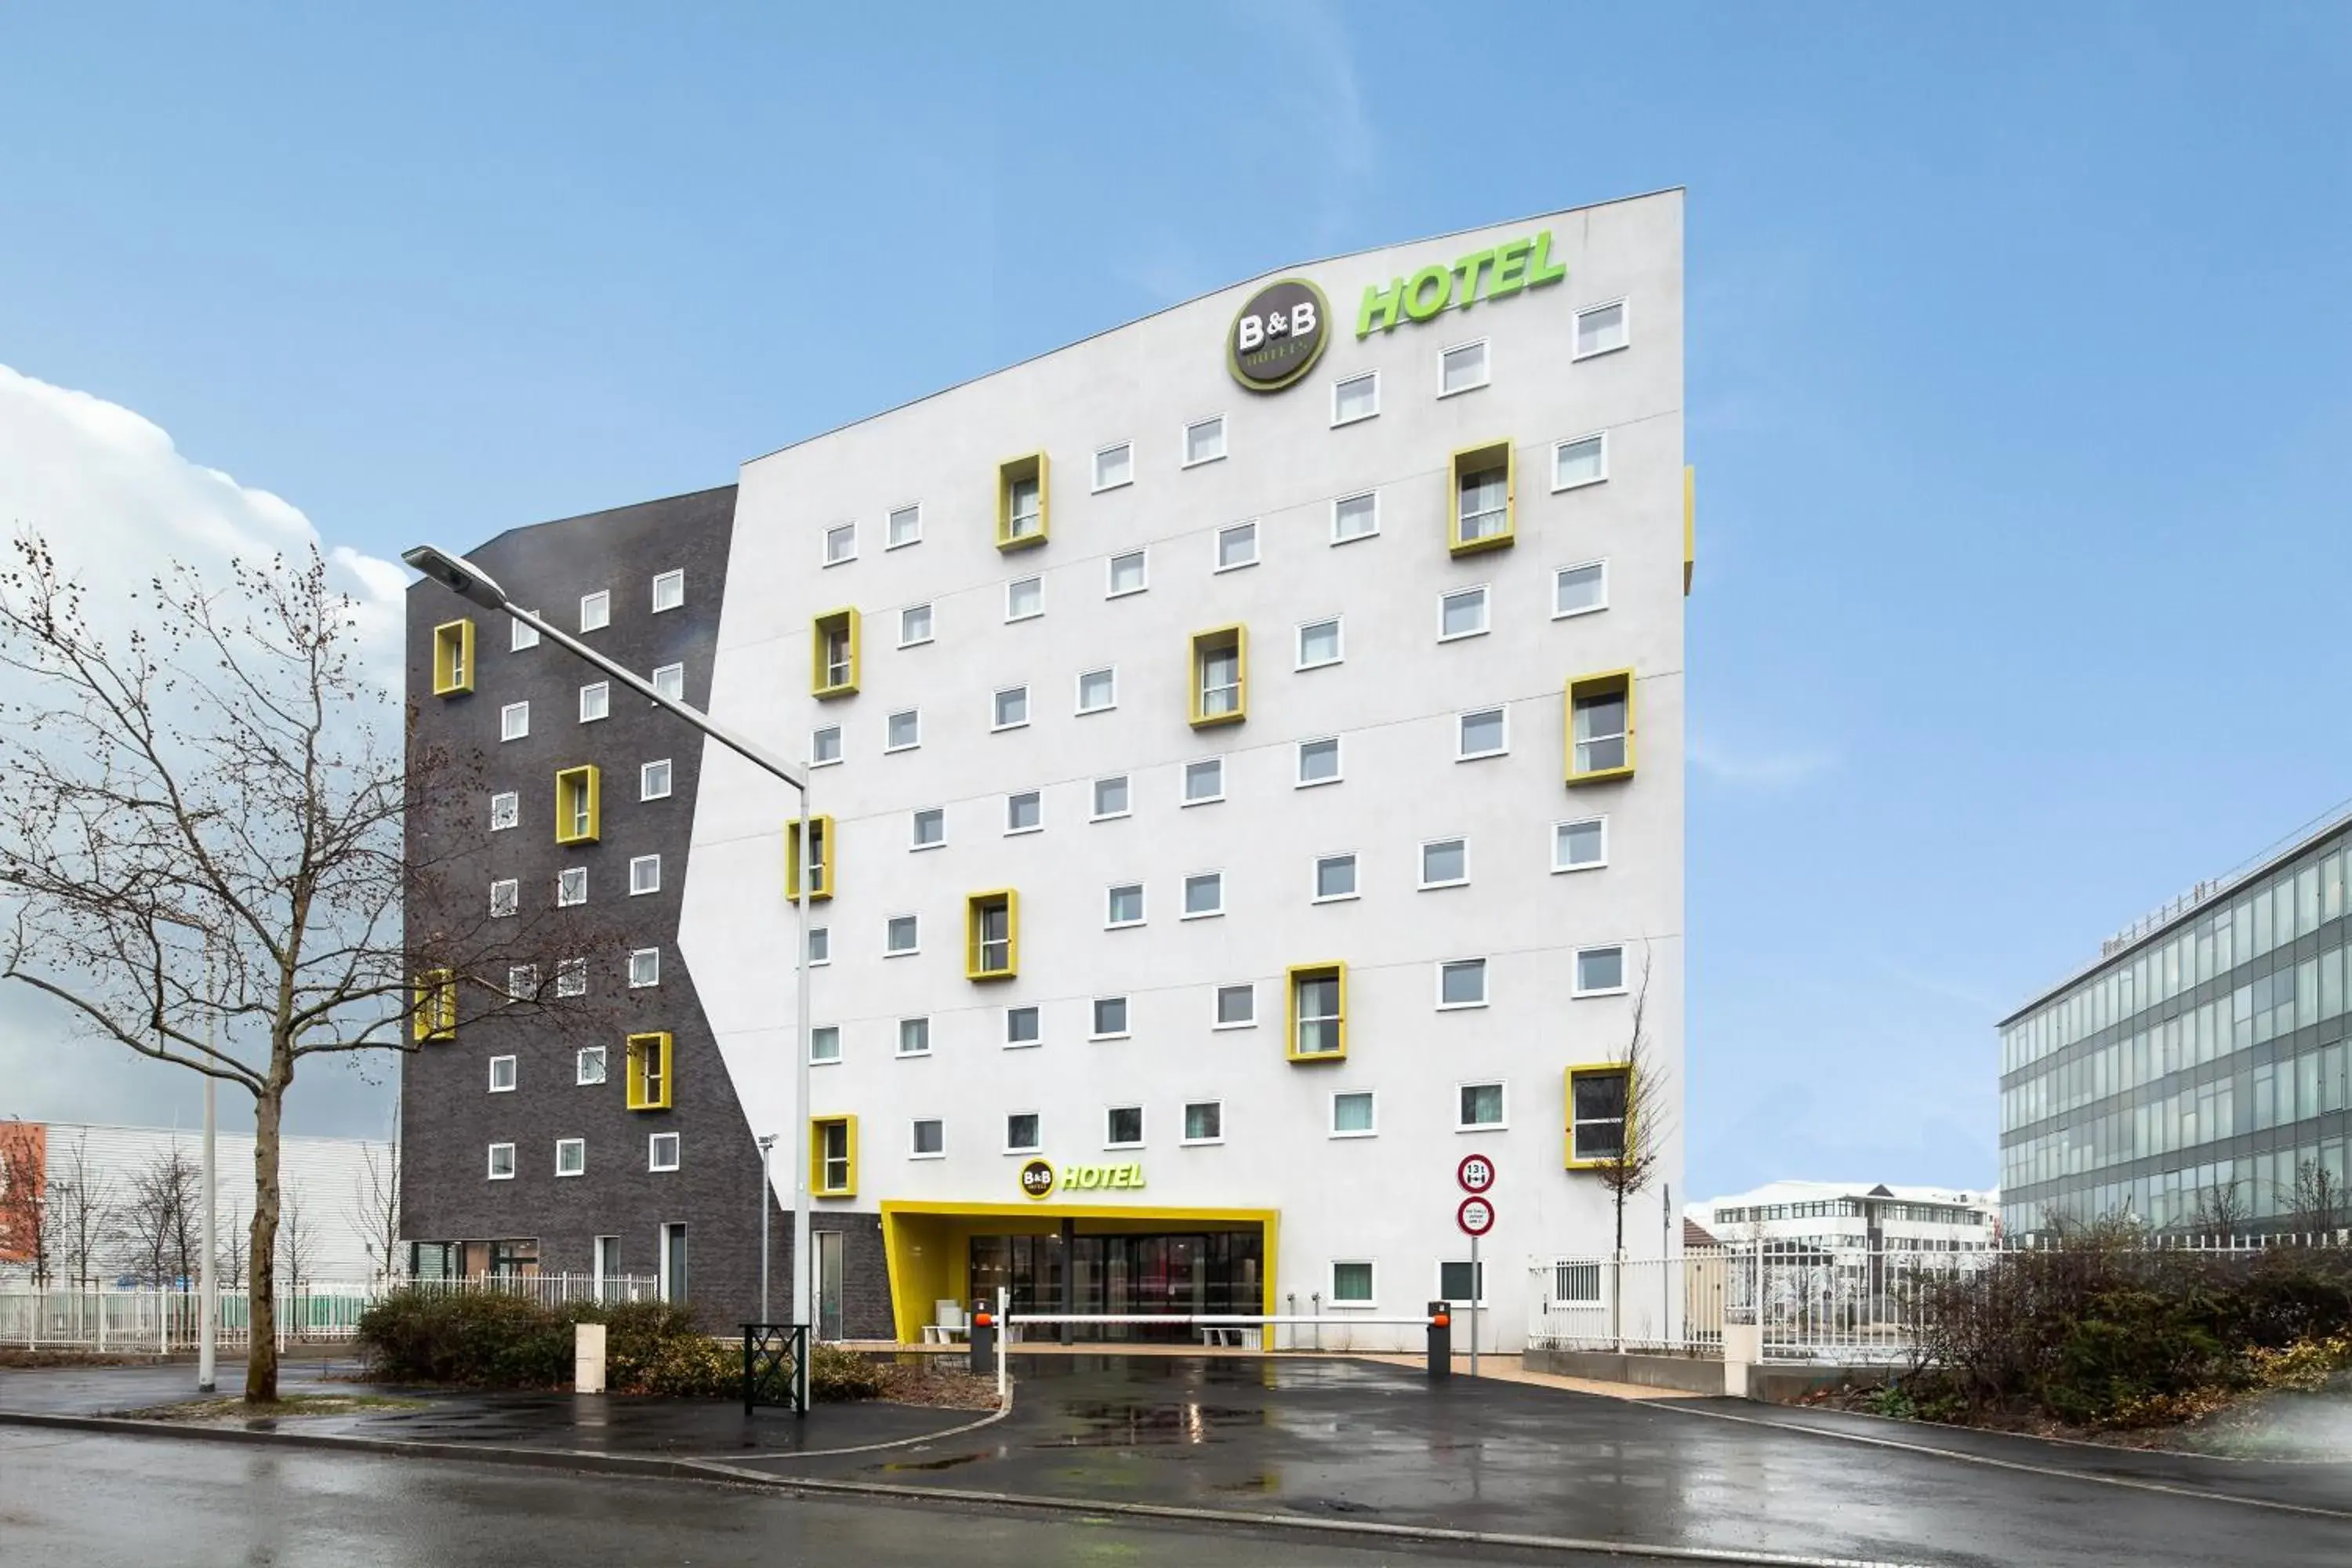 Facade/entrance, Property Building in B&B HOTEL NANTERRE Rueil-Malmaison